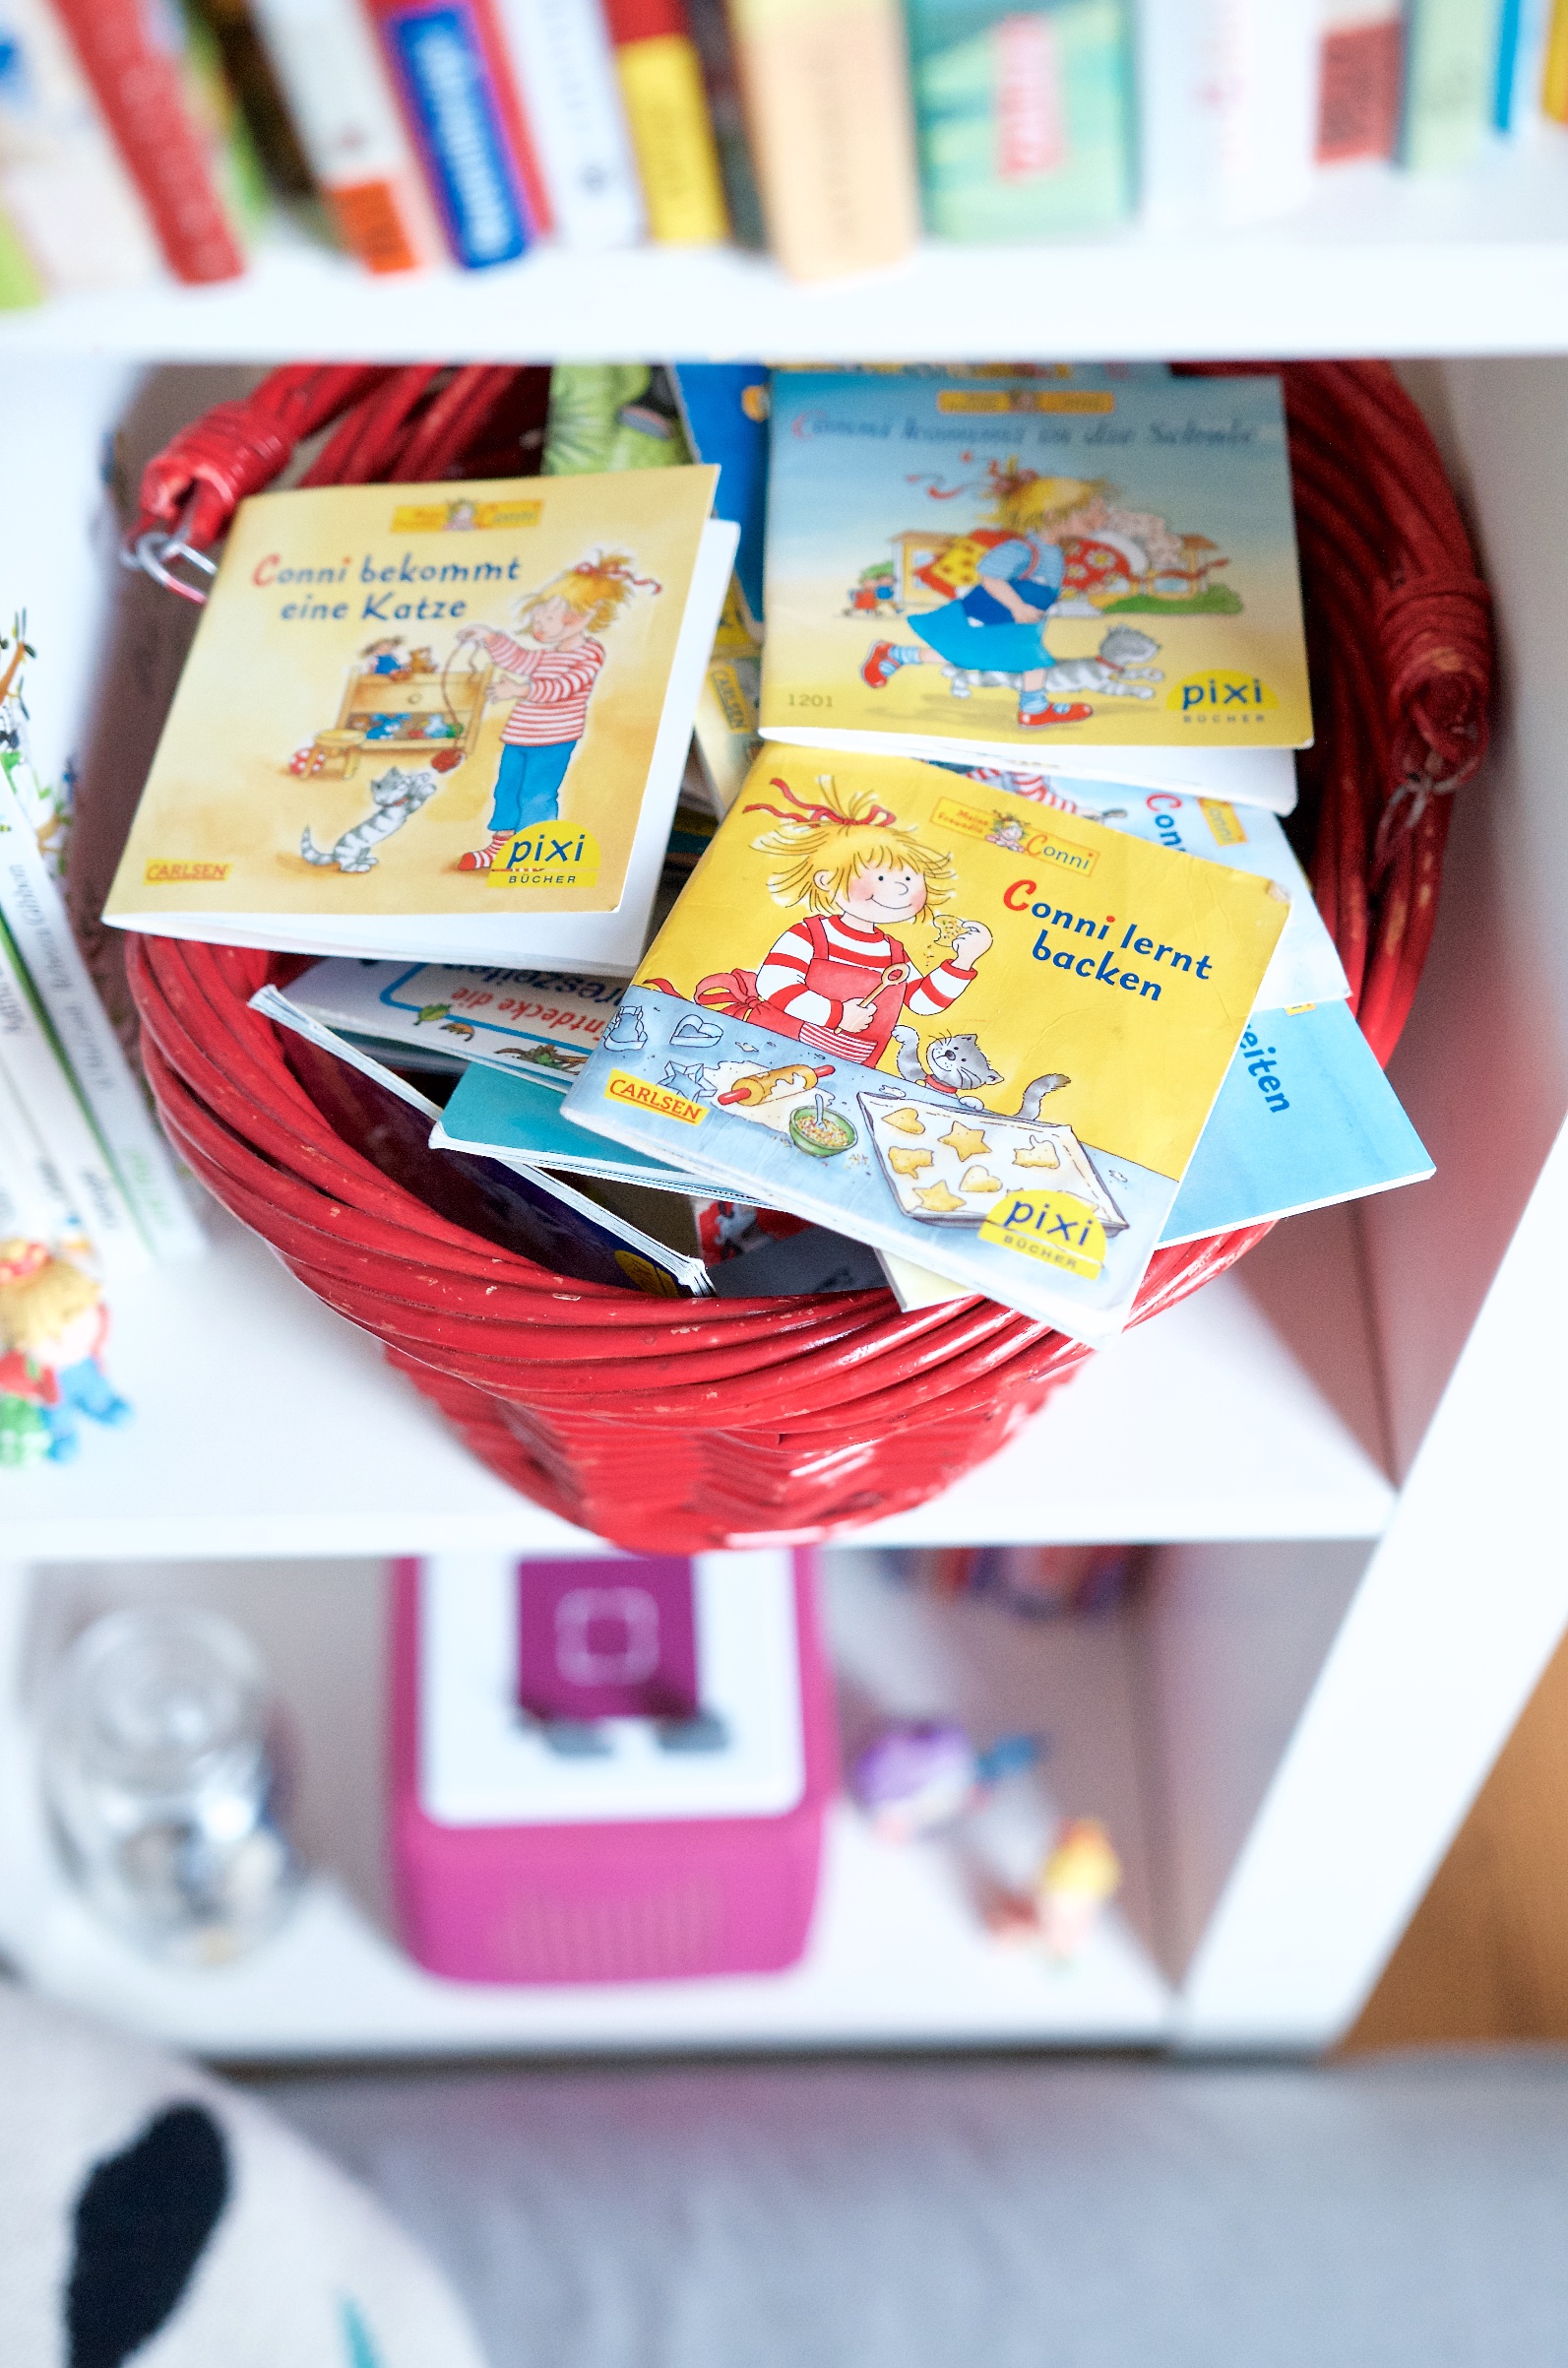 Conni Pixi Bücher im Bücherregal im Kinderzimmer